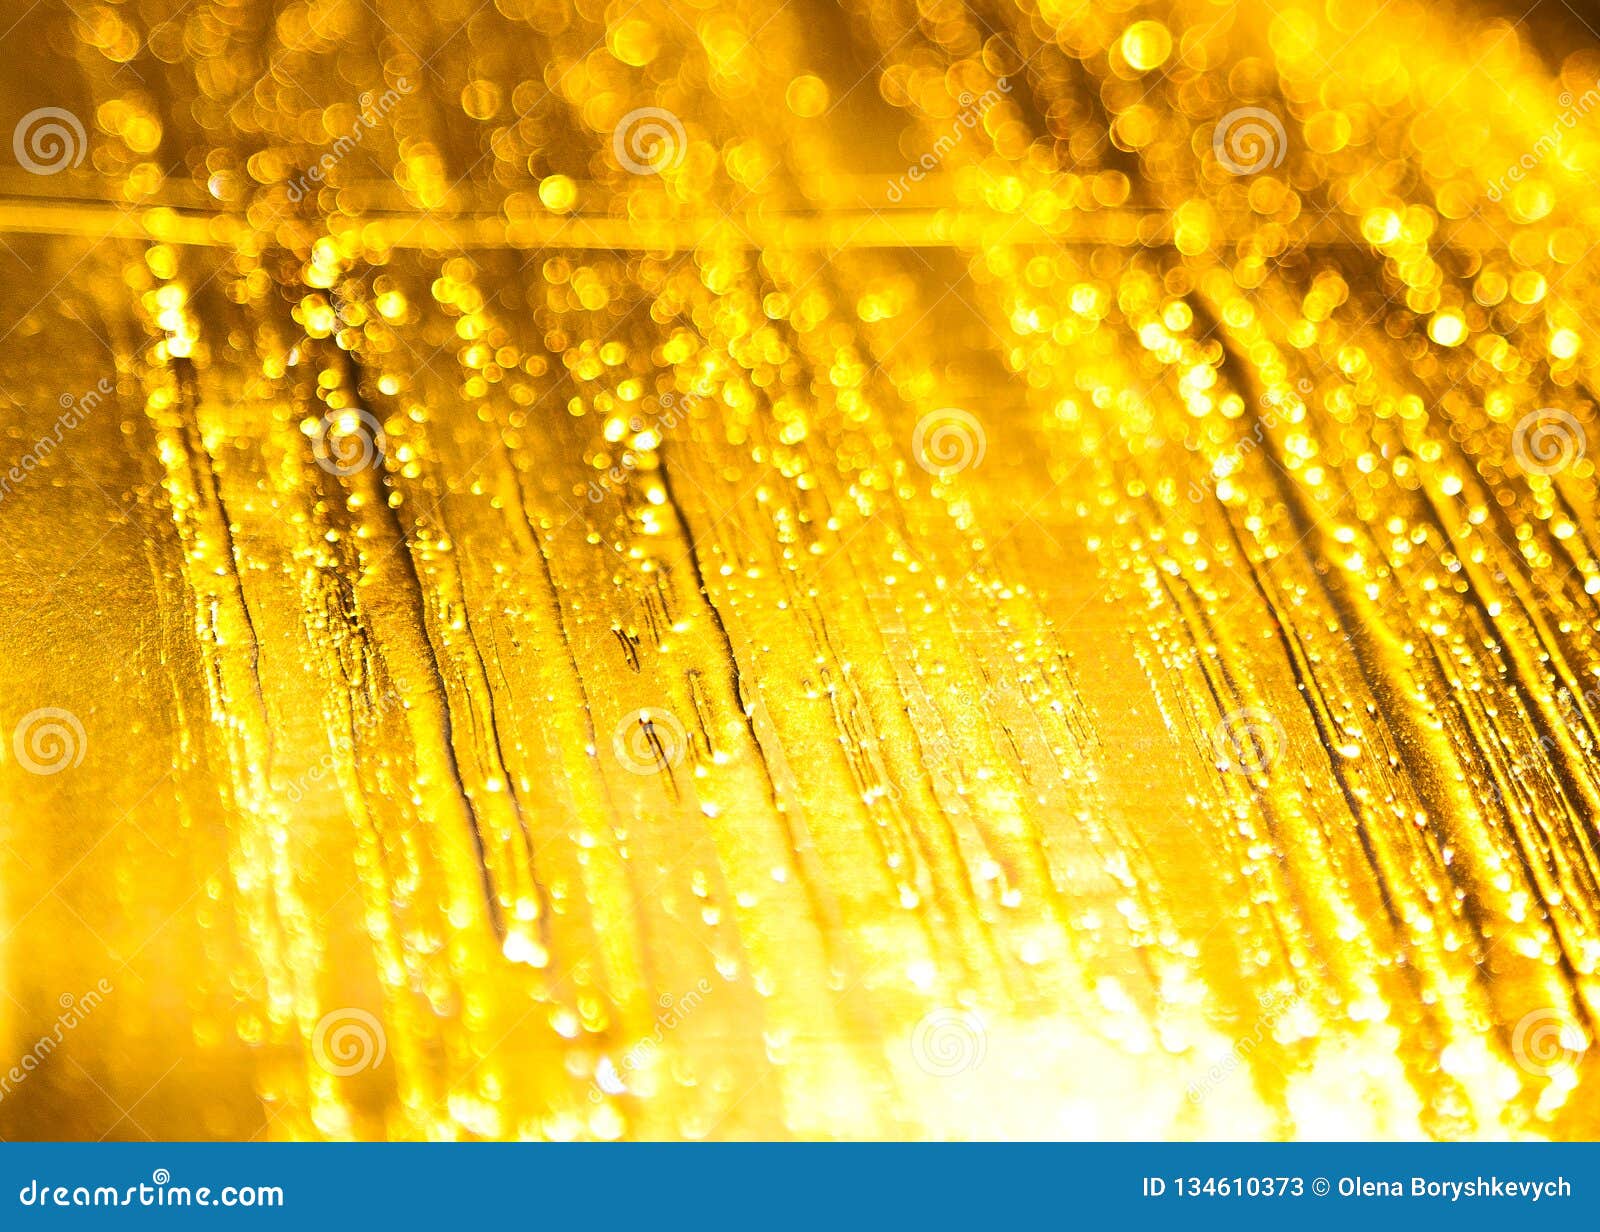 Không gian đầy màu sắc và sống động với nền và họa tiết vàng sáng tỏa trong ảnh chụp khoảng cảnh của chúng tôi. Hãy cùng đến với hình ảnh này để trải nghiệm sự rực rỡ và độc đáo của nền và họa tiết vàng sáng tỏa!